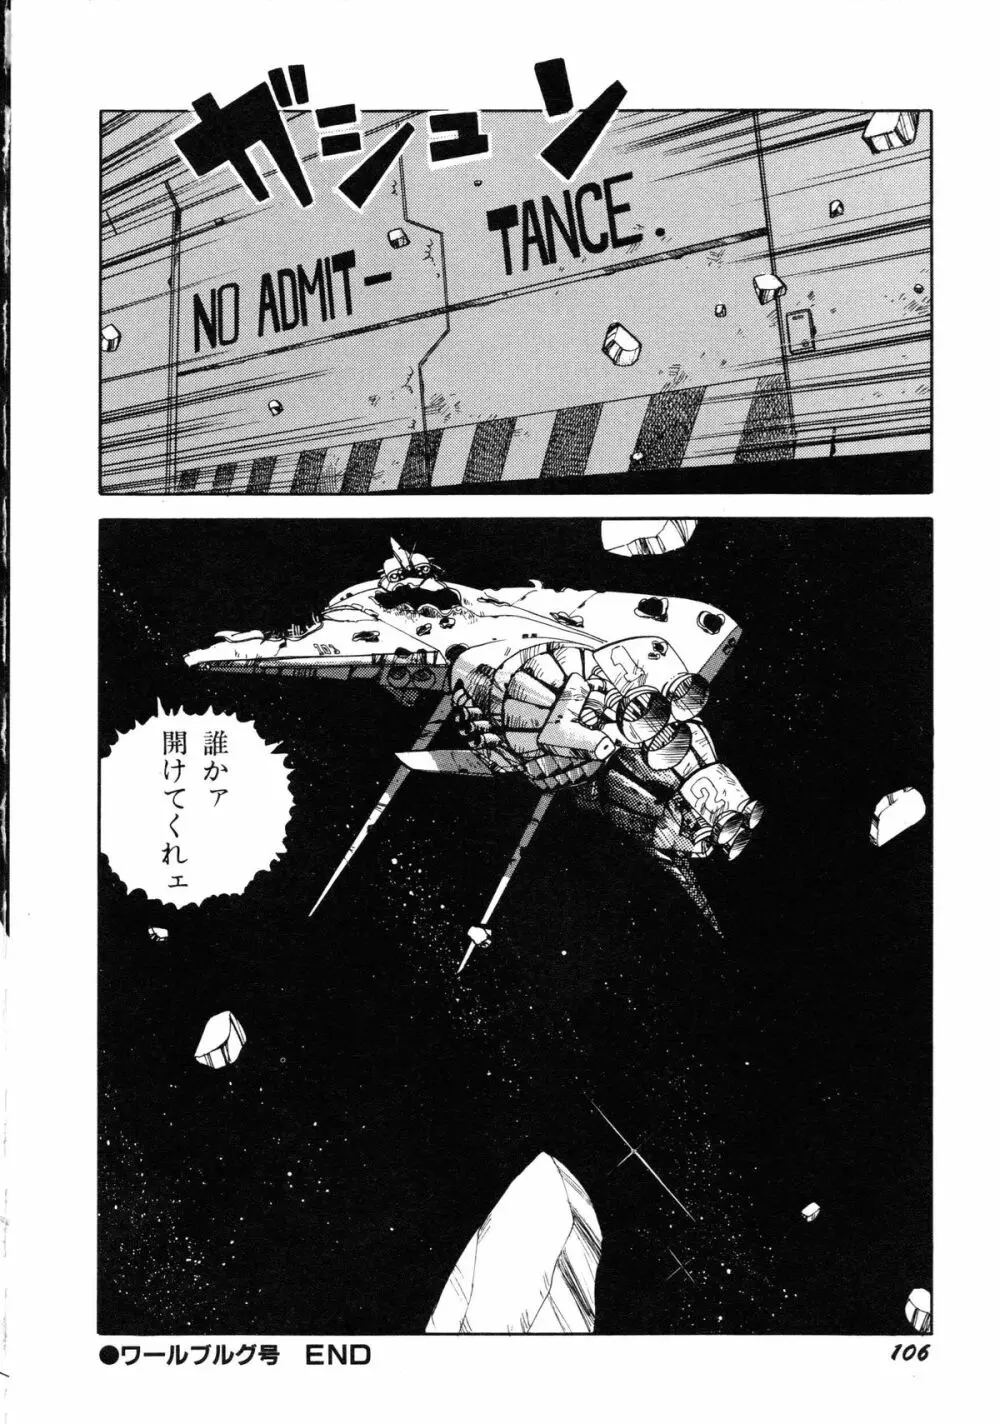 ロボット&美少女傑作選 レモン・ピープル1982-1986 110ページ